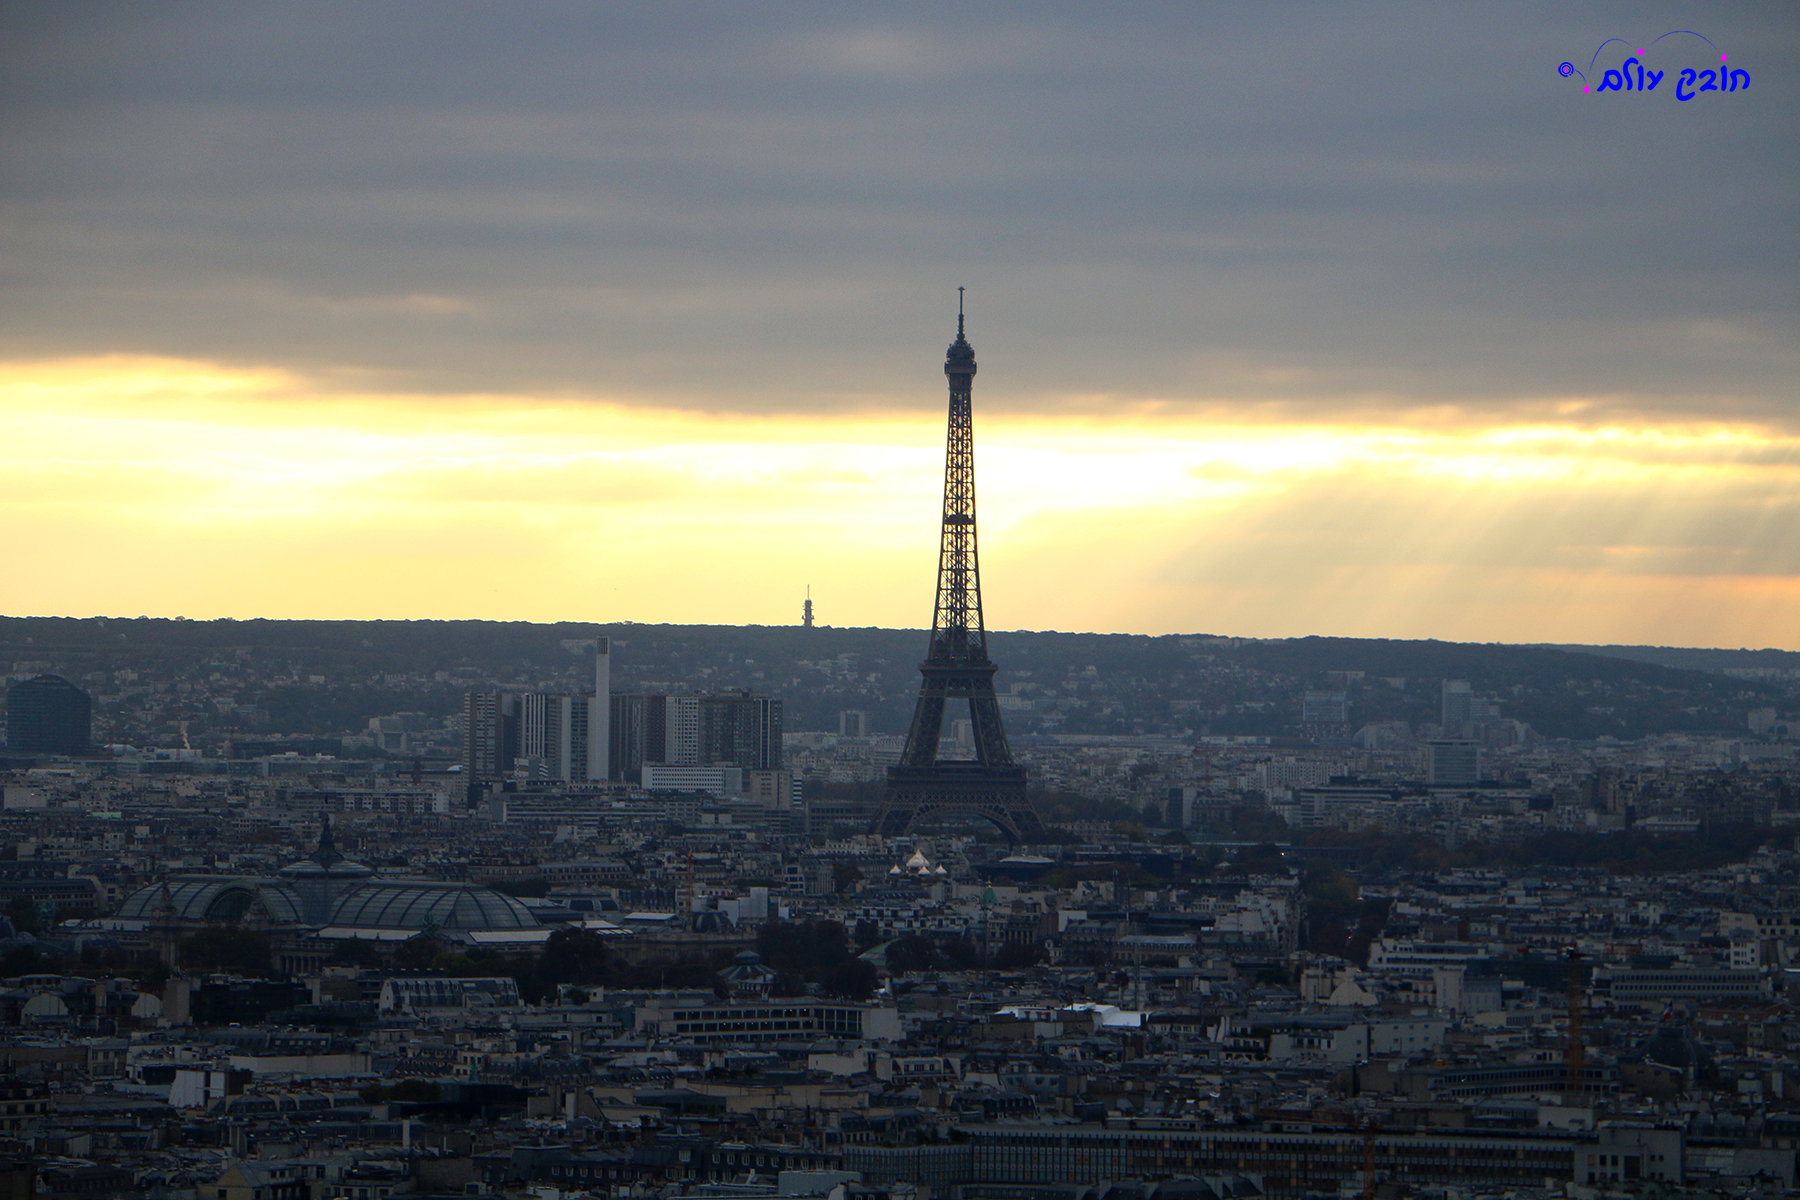  פריז – מתכון ליום בעיר האורות